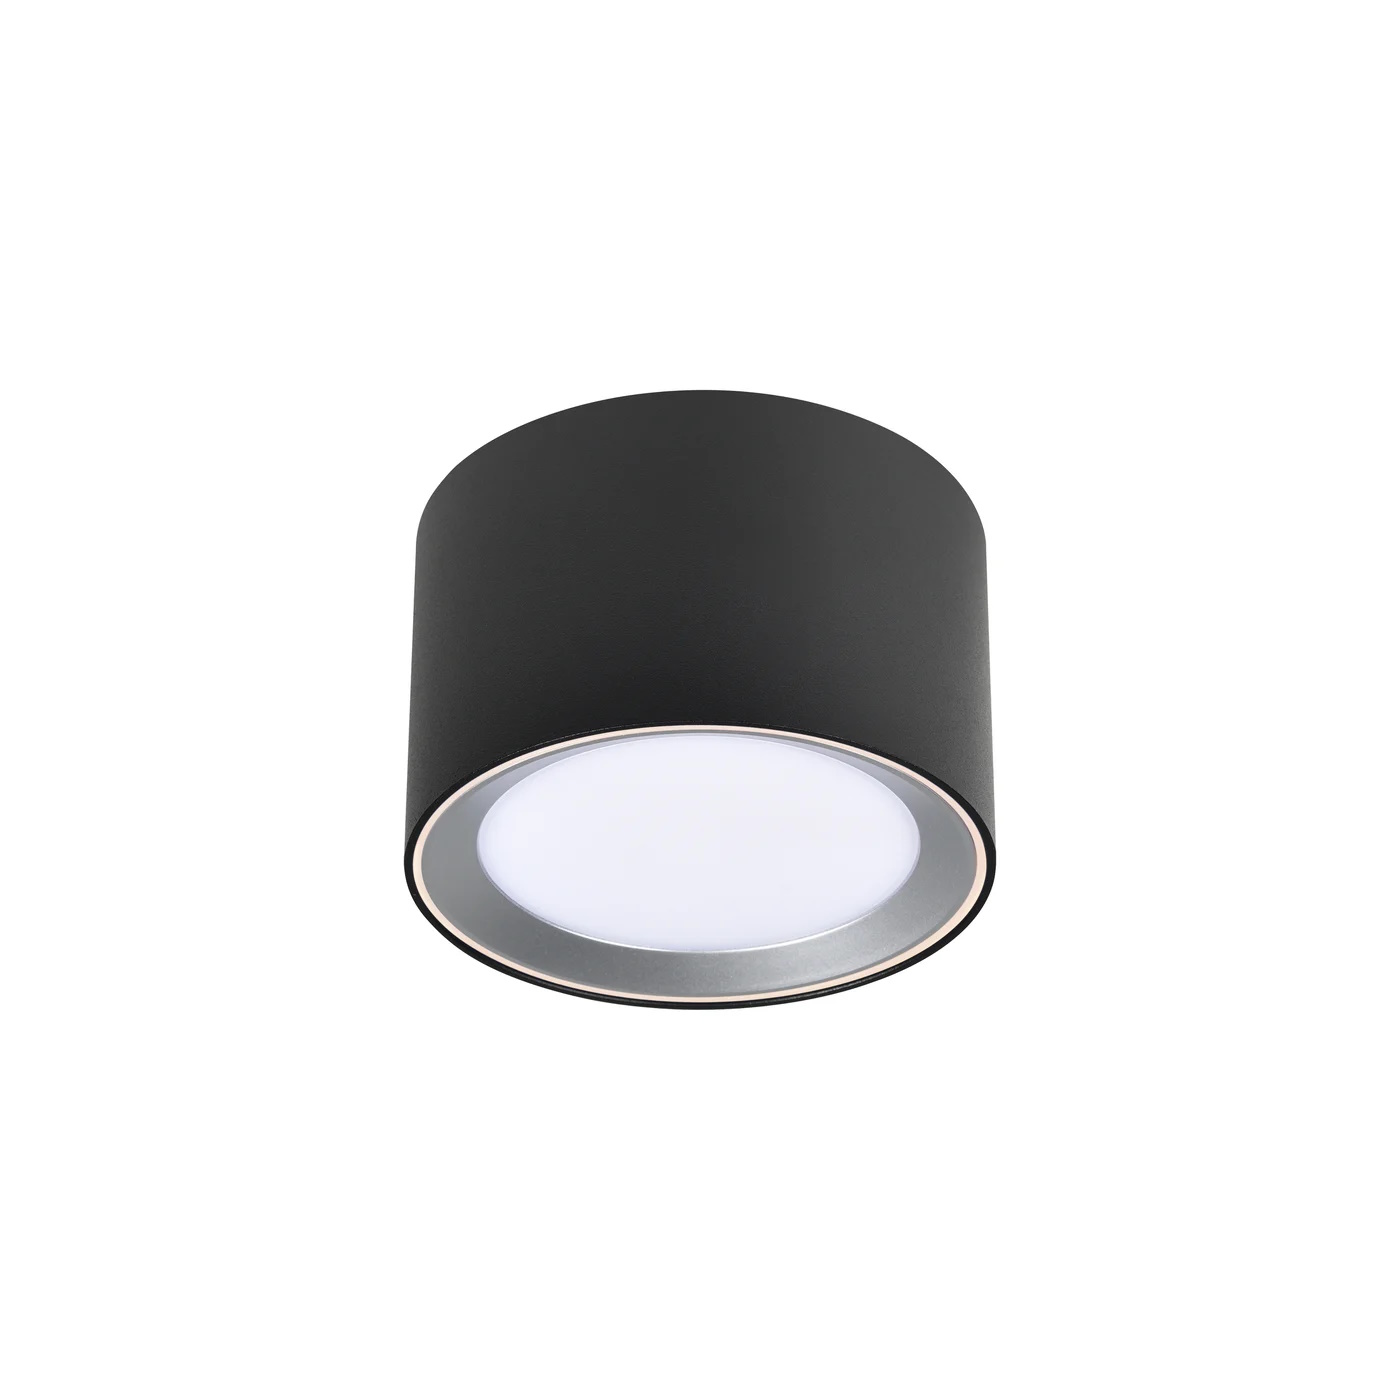 Nordlux Landon 8 LED Badleuchte 6,5W IP44 Schwarz warmweiss | Deckenlampen